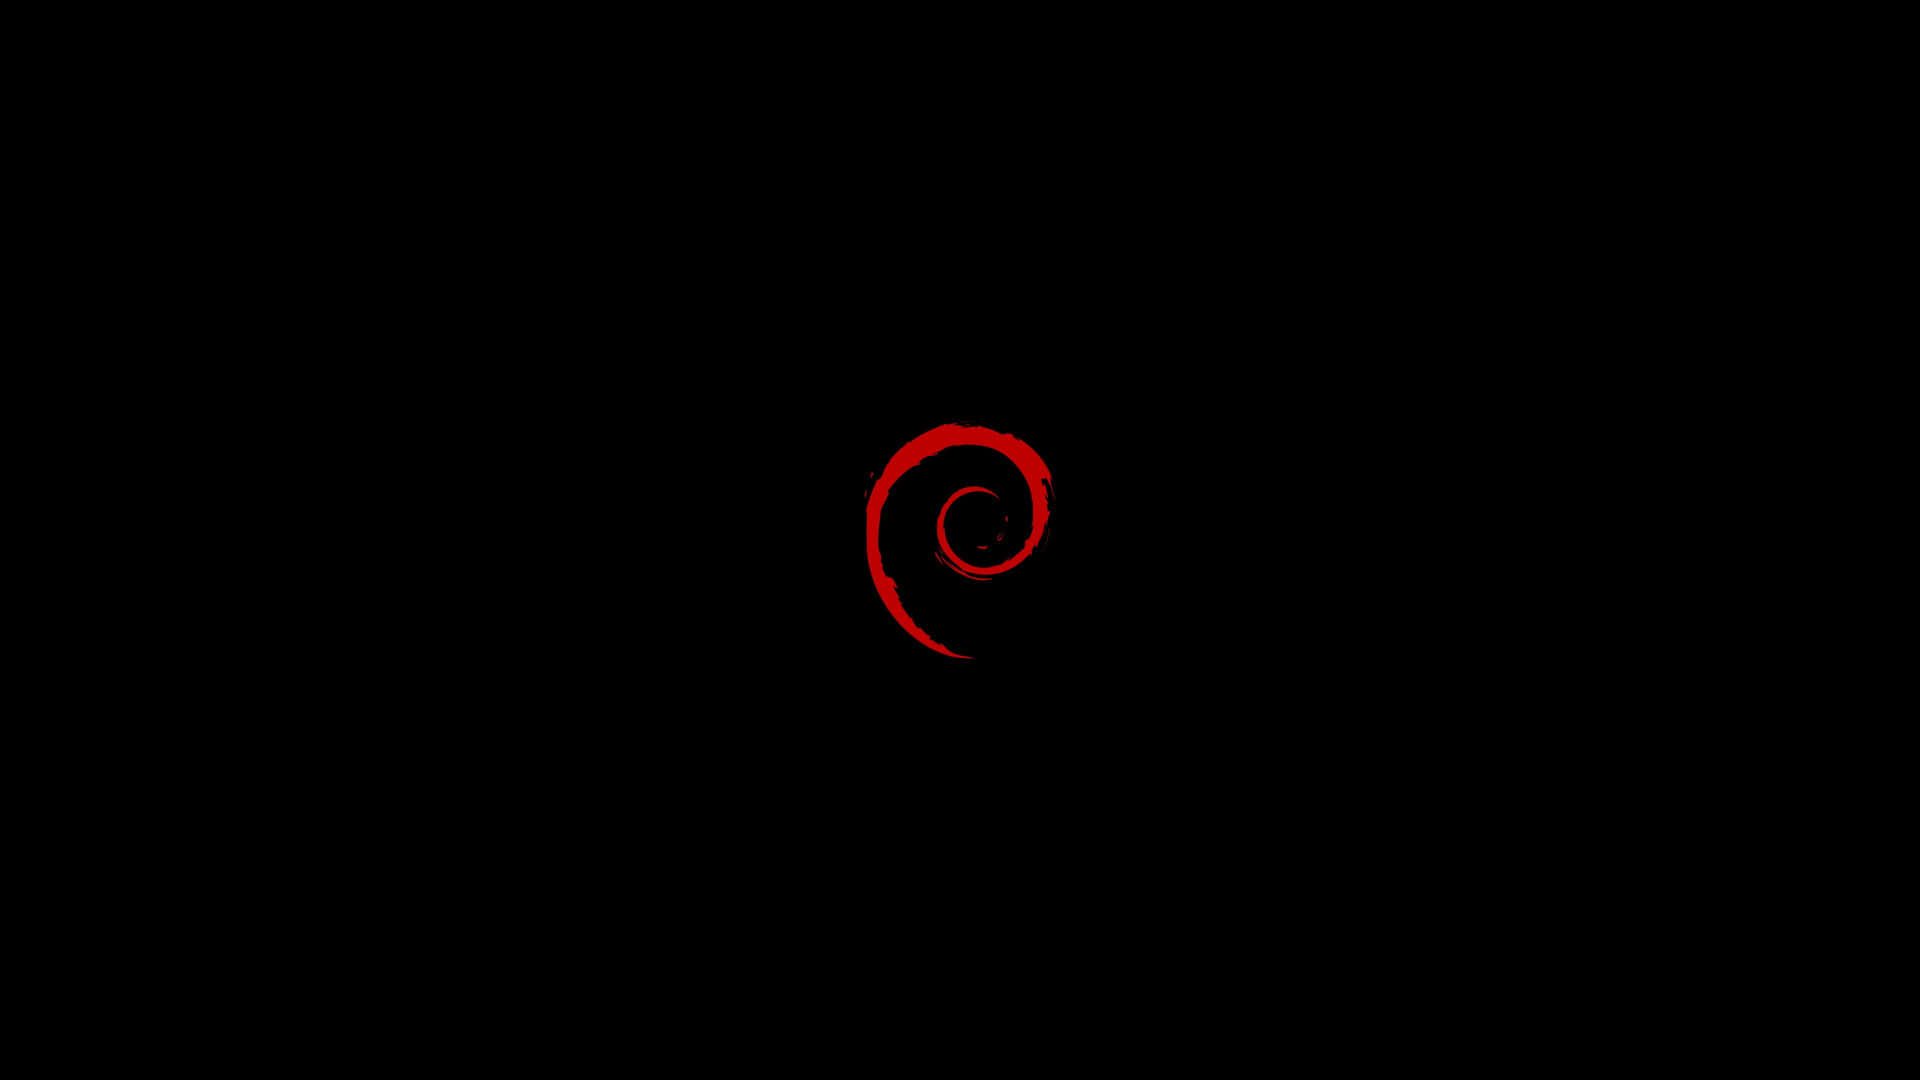 Debian Logoon Black Background Wallpaper